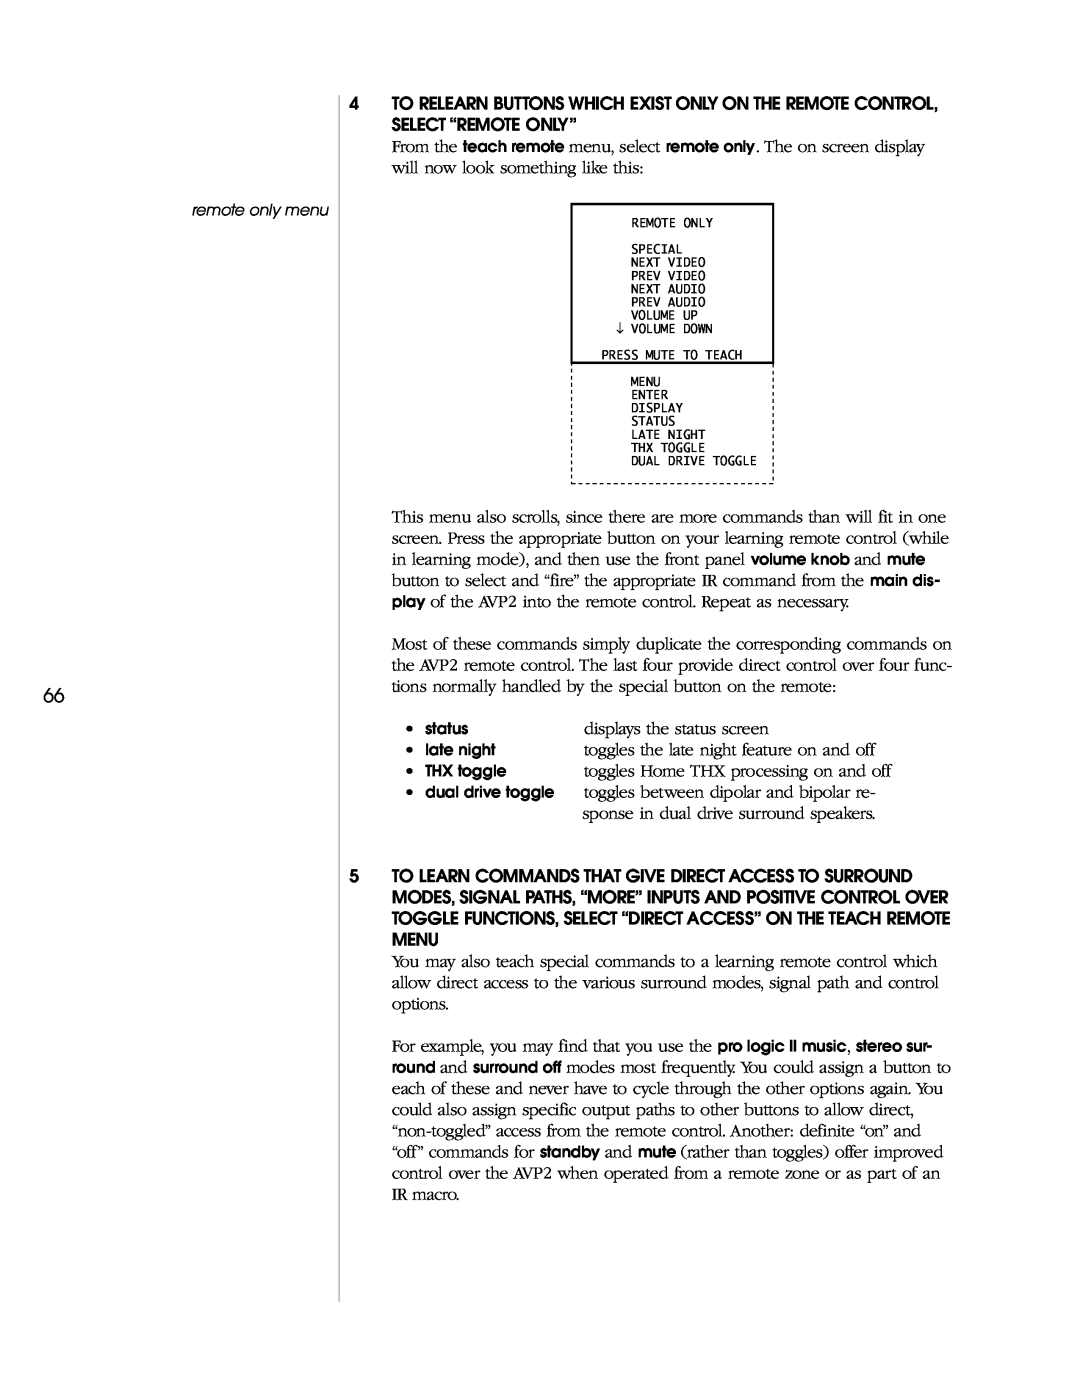 Madrigal Imaging AVP2 owner manual displays the status screen 